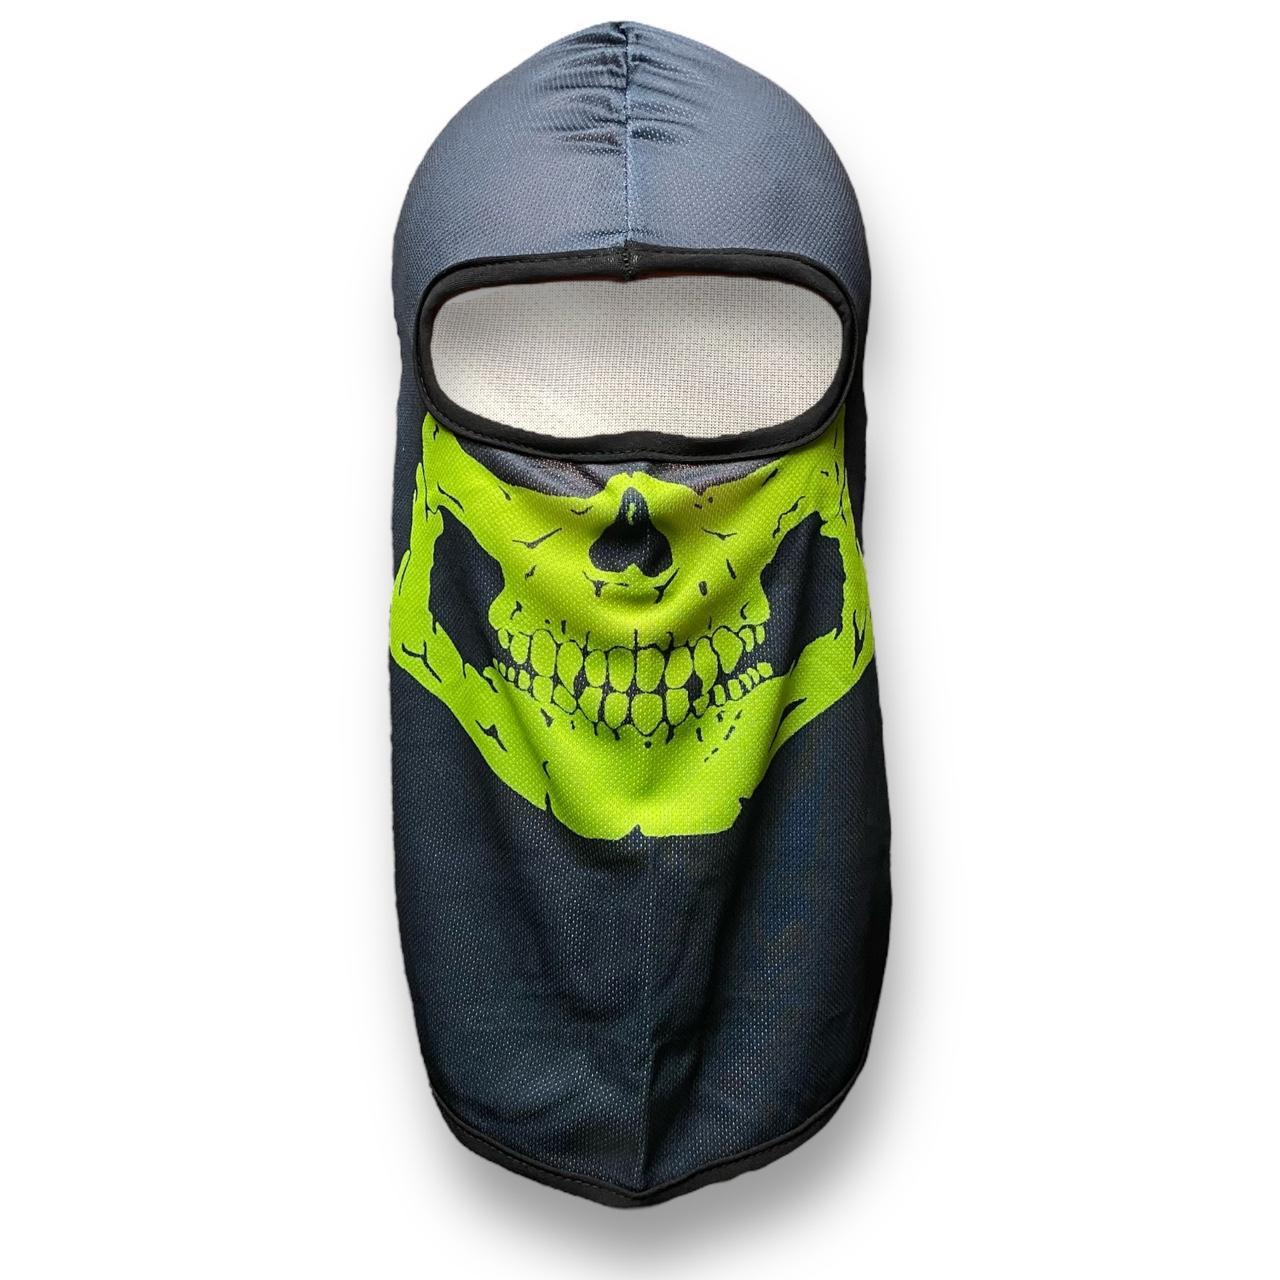 Winter Tactical Balaclava Skulls Face Mask Hoods... - Depop